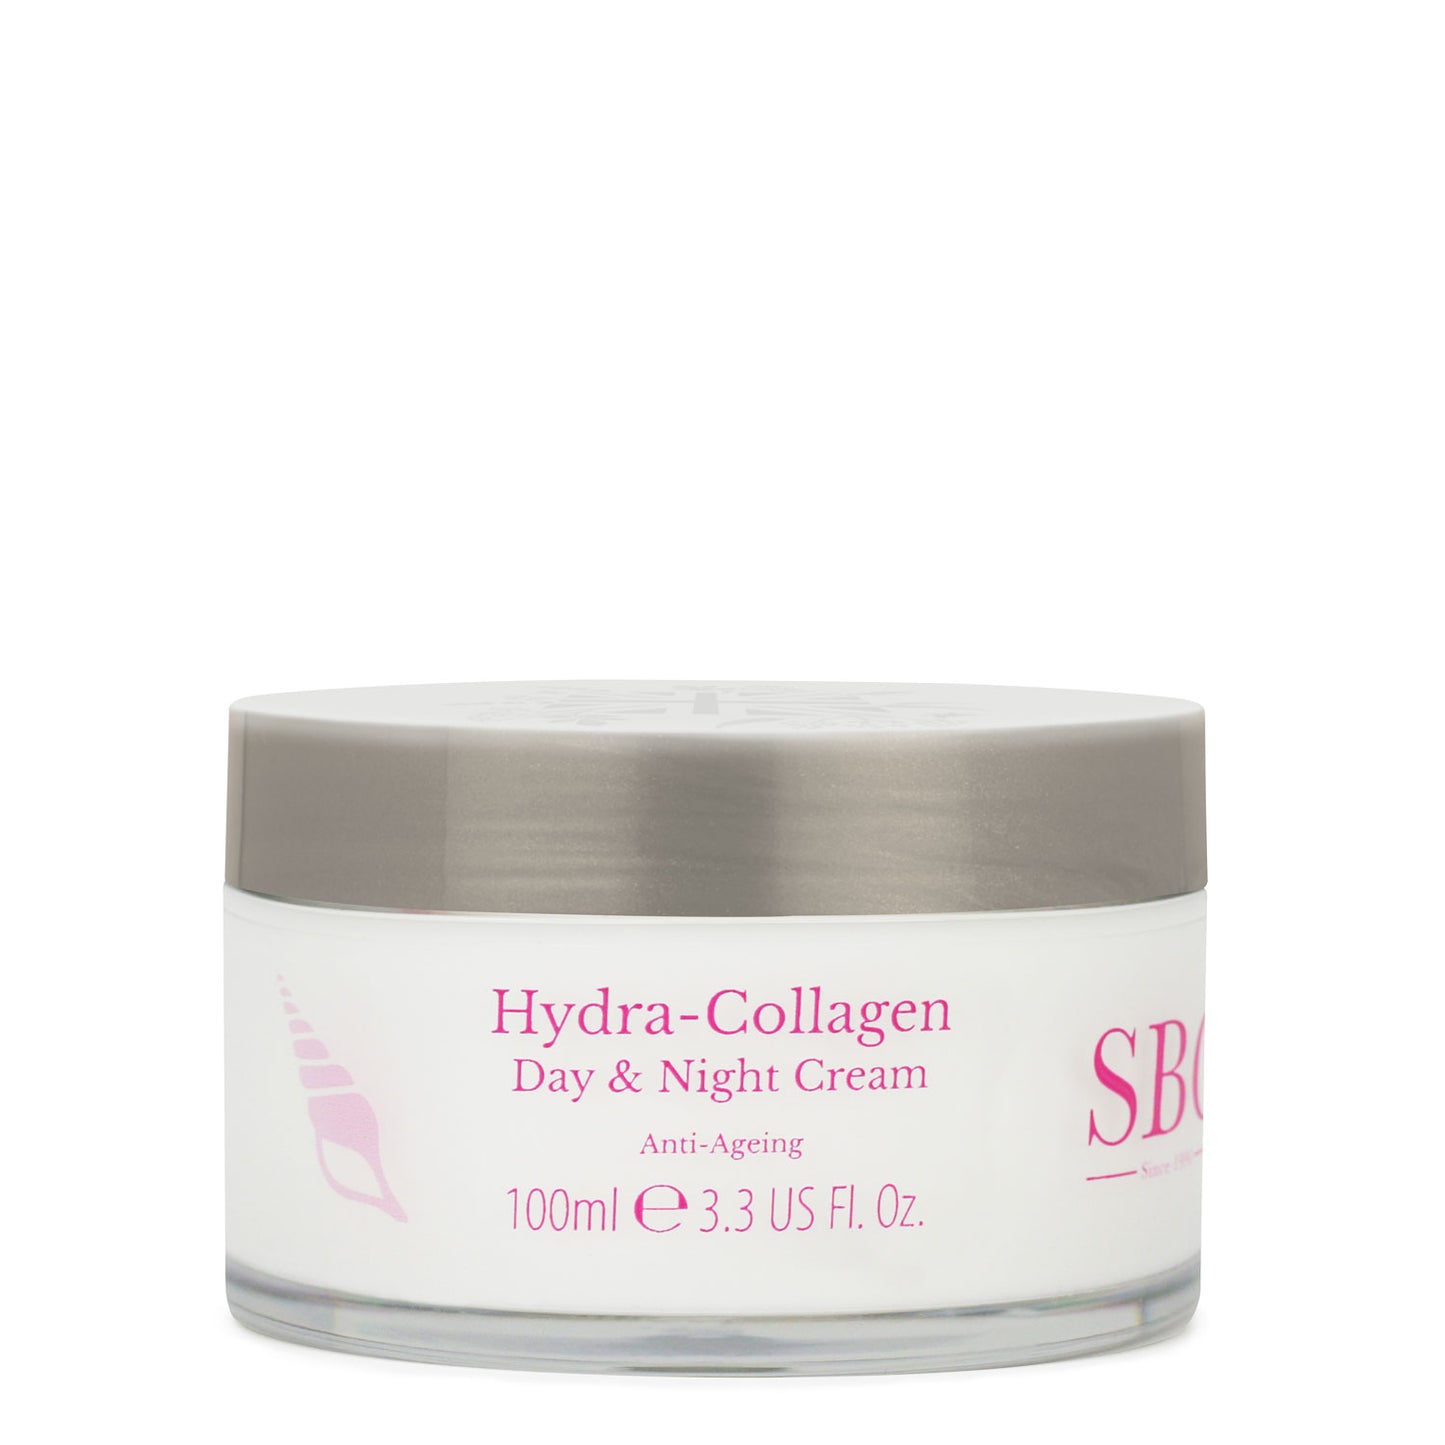 Hydra-Collagen Day & Night Cream